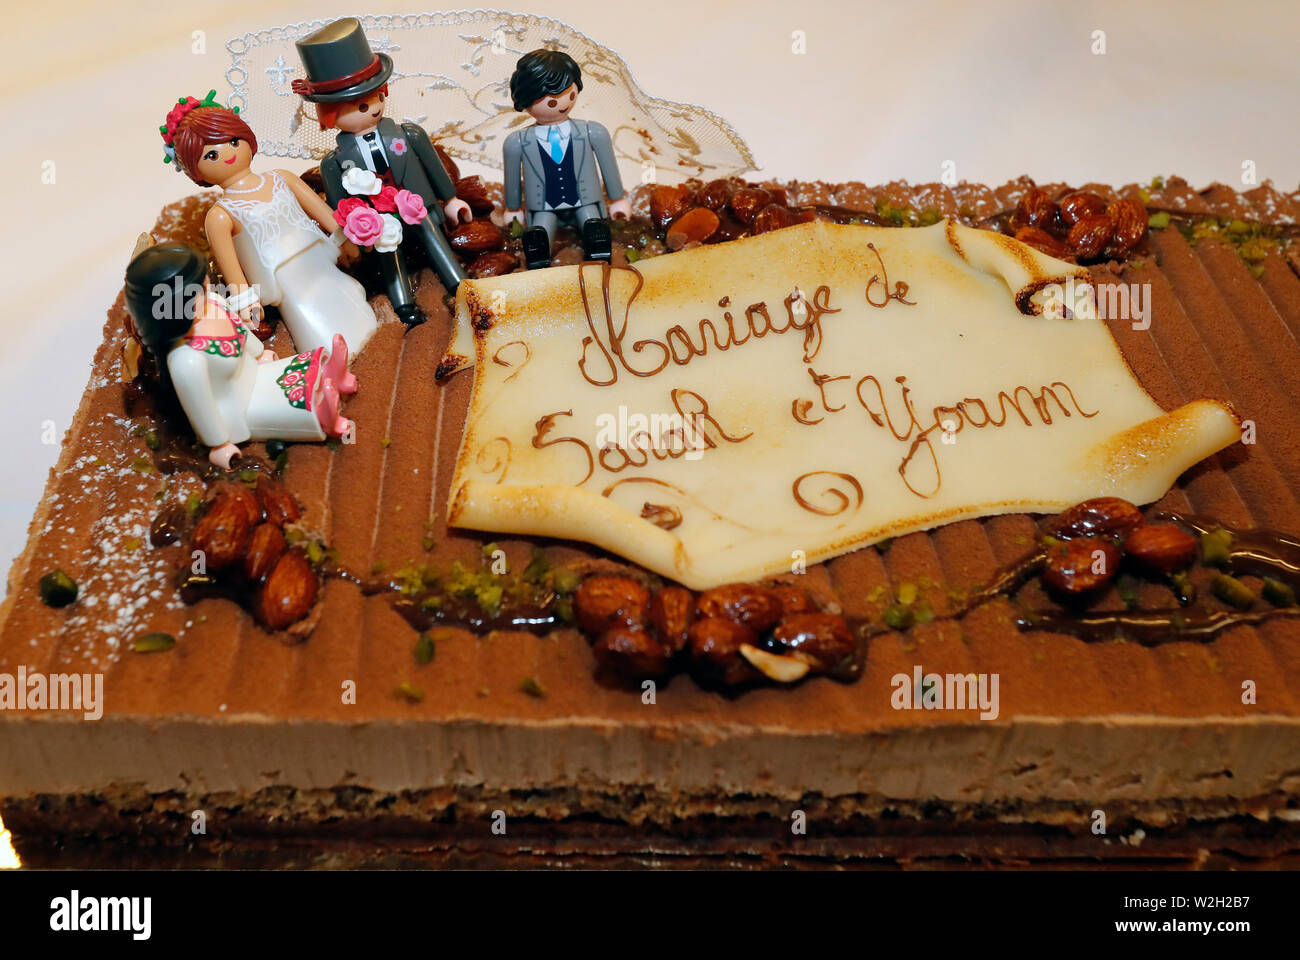 Époux et figurines sur un gâteau de mariage. La France. Banque D'Images